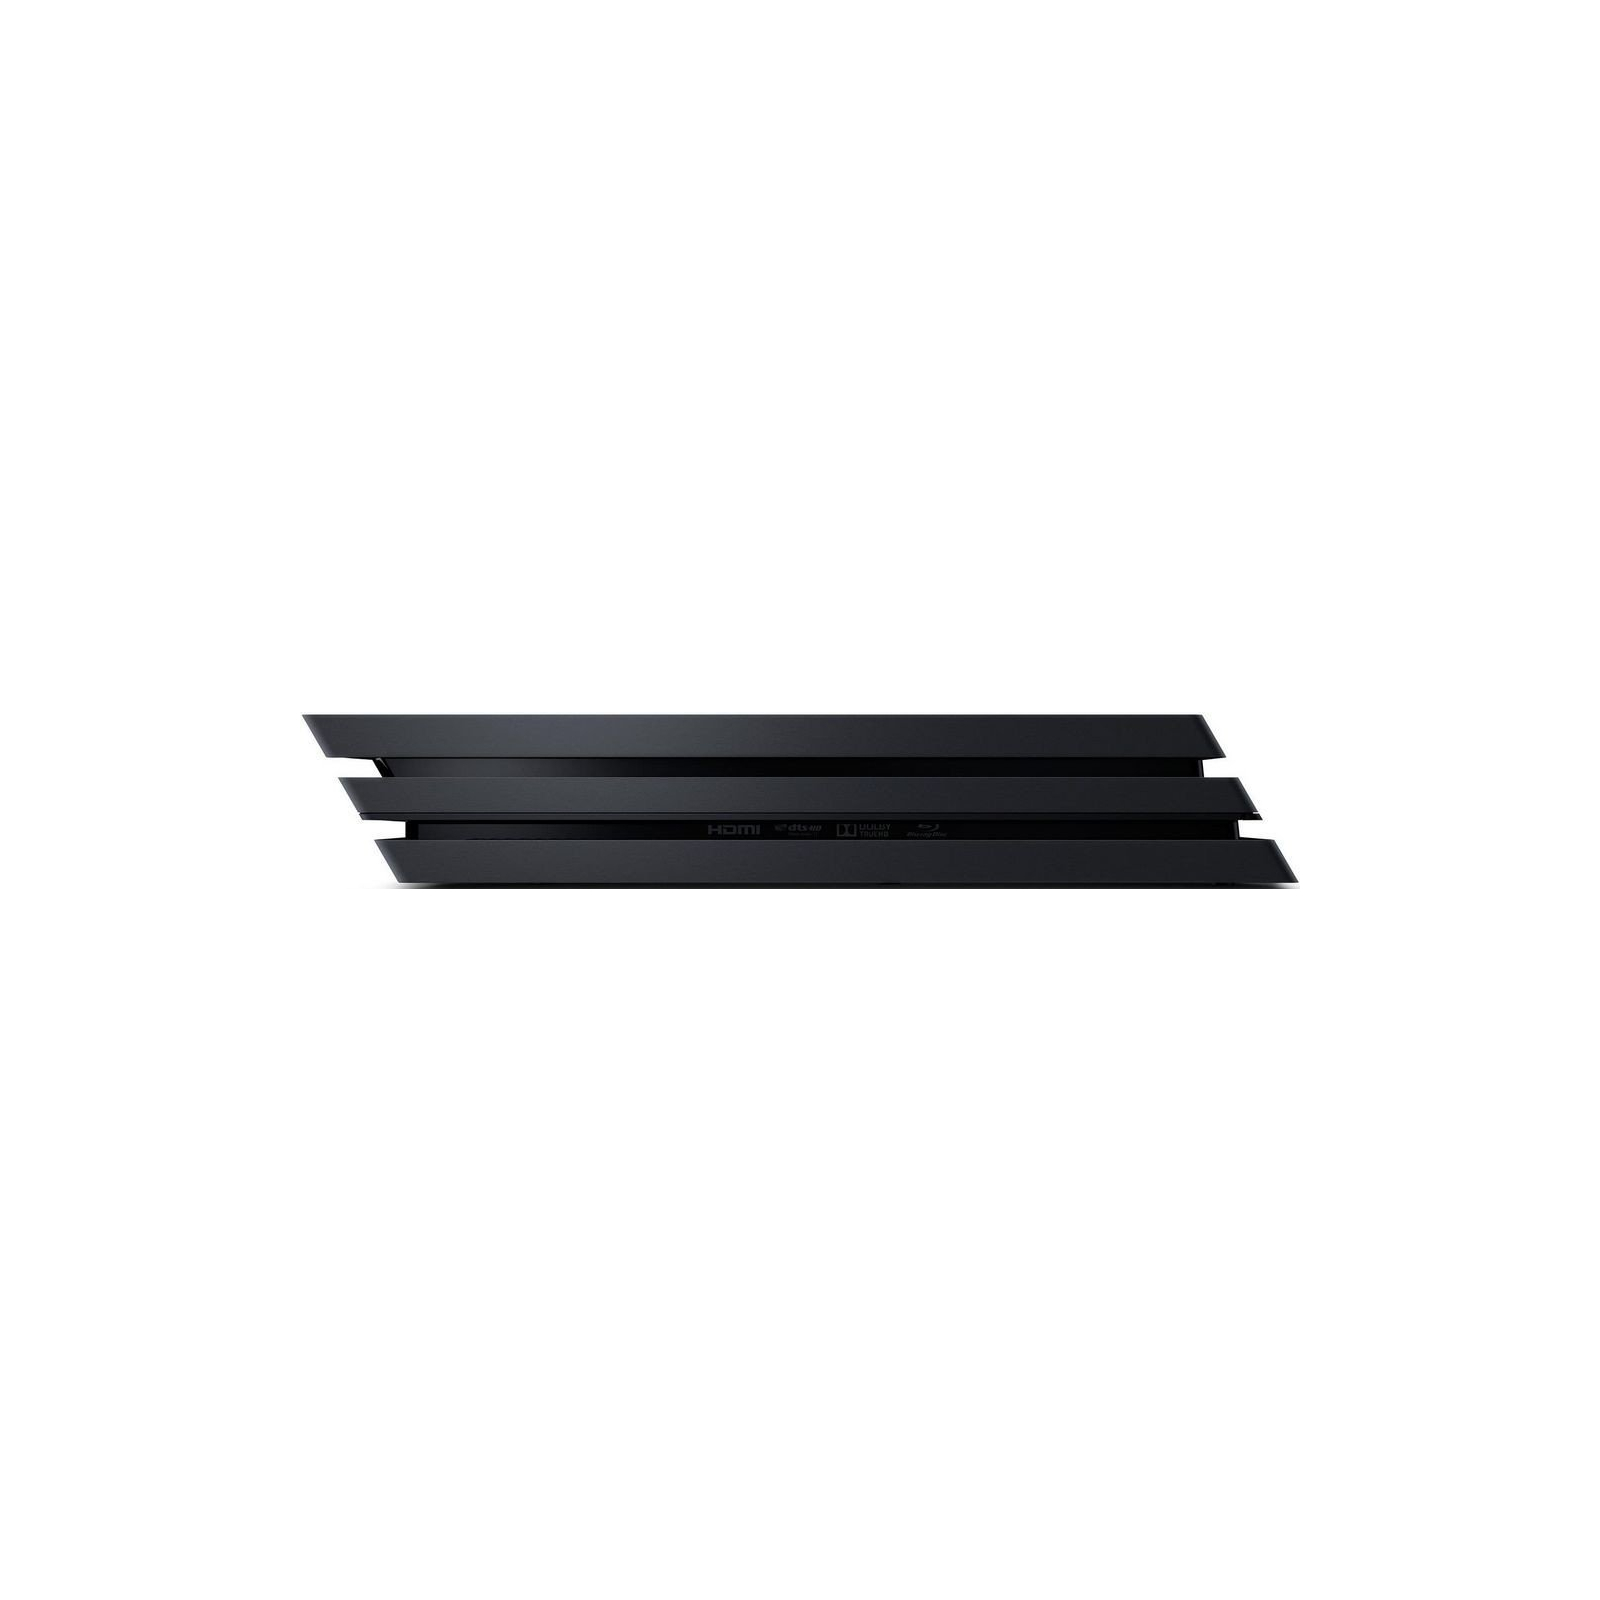 Игровая консоль Sony PlayStation 4 Pro 1TB black (CUH-7108B) изображение 10